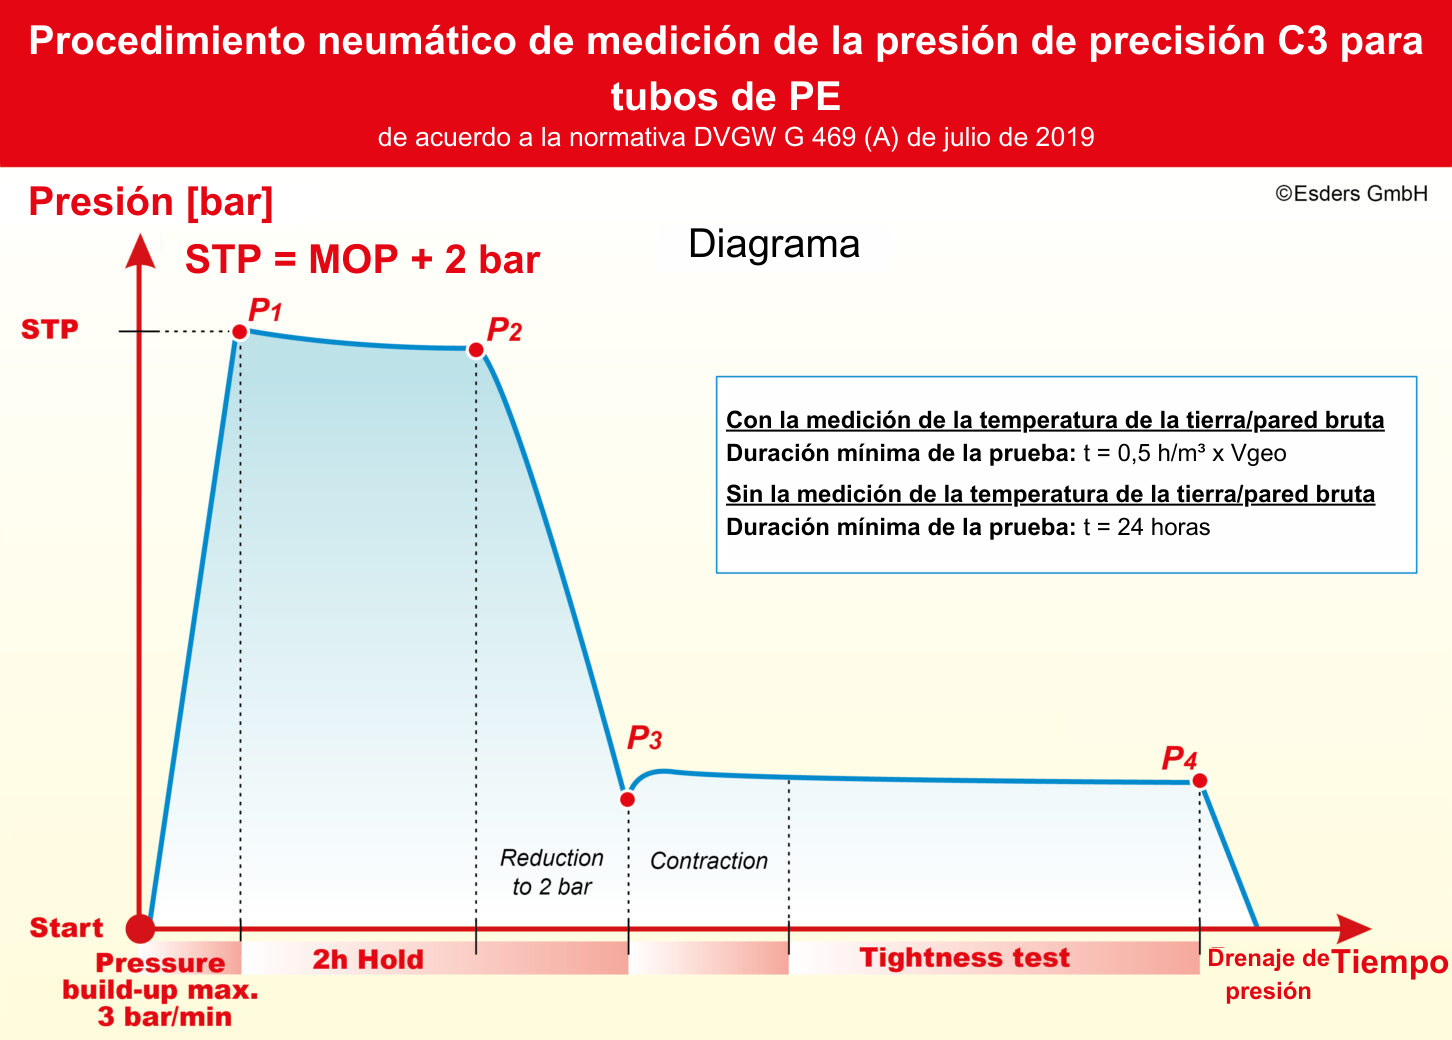 Procedimiento de prueba de medición de la presión neumática C3 según la DVGW G 469